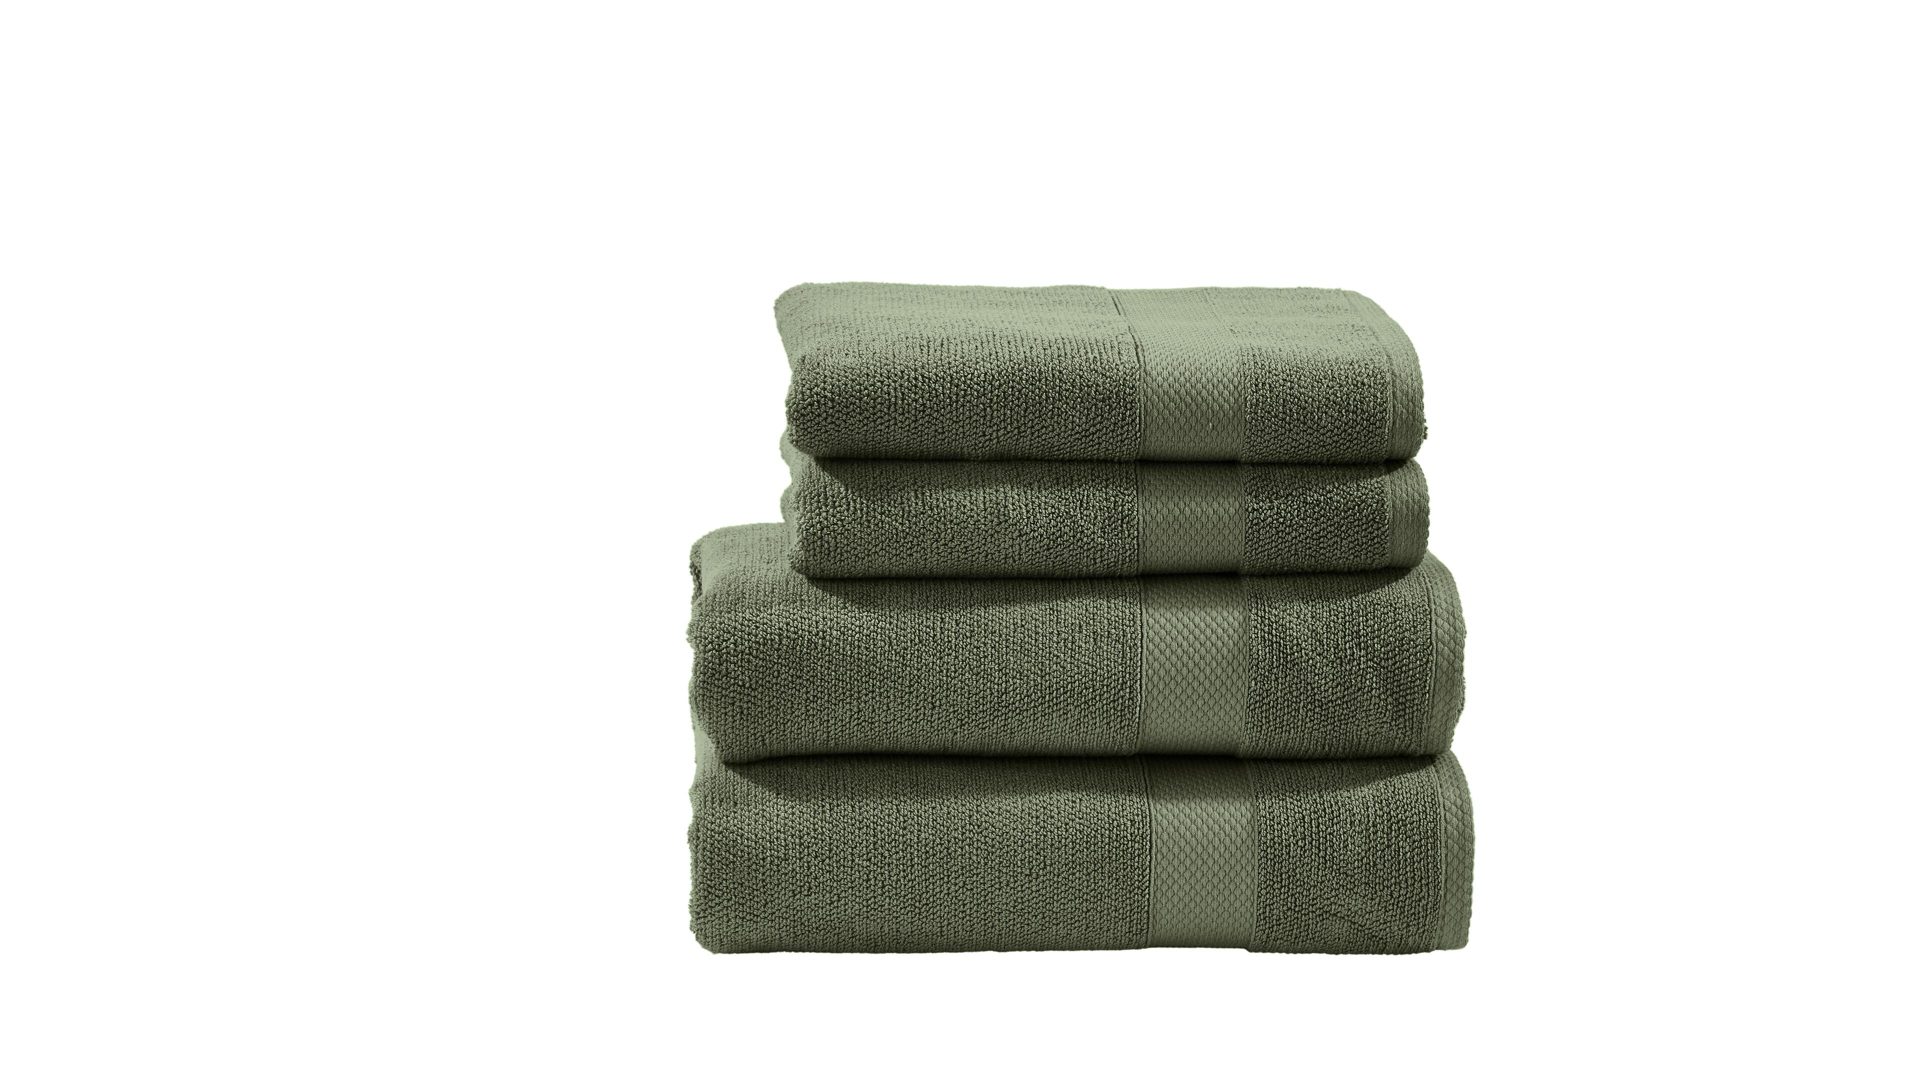 Handtuch-Set Done® be different aus Stoff in Dunkelgrün DONE® Handtuch-Set Deluxe für Ihre Heimtextilien khakifarbene Baumwolle – vierteilig